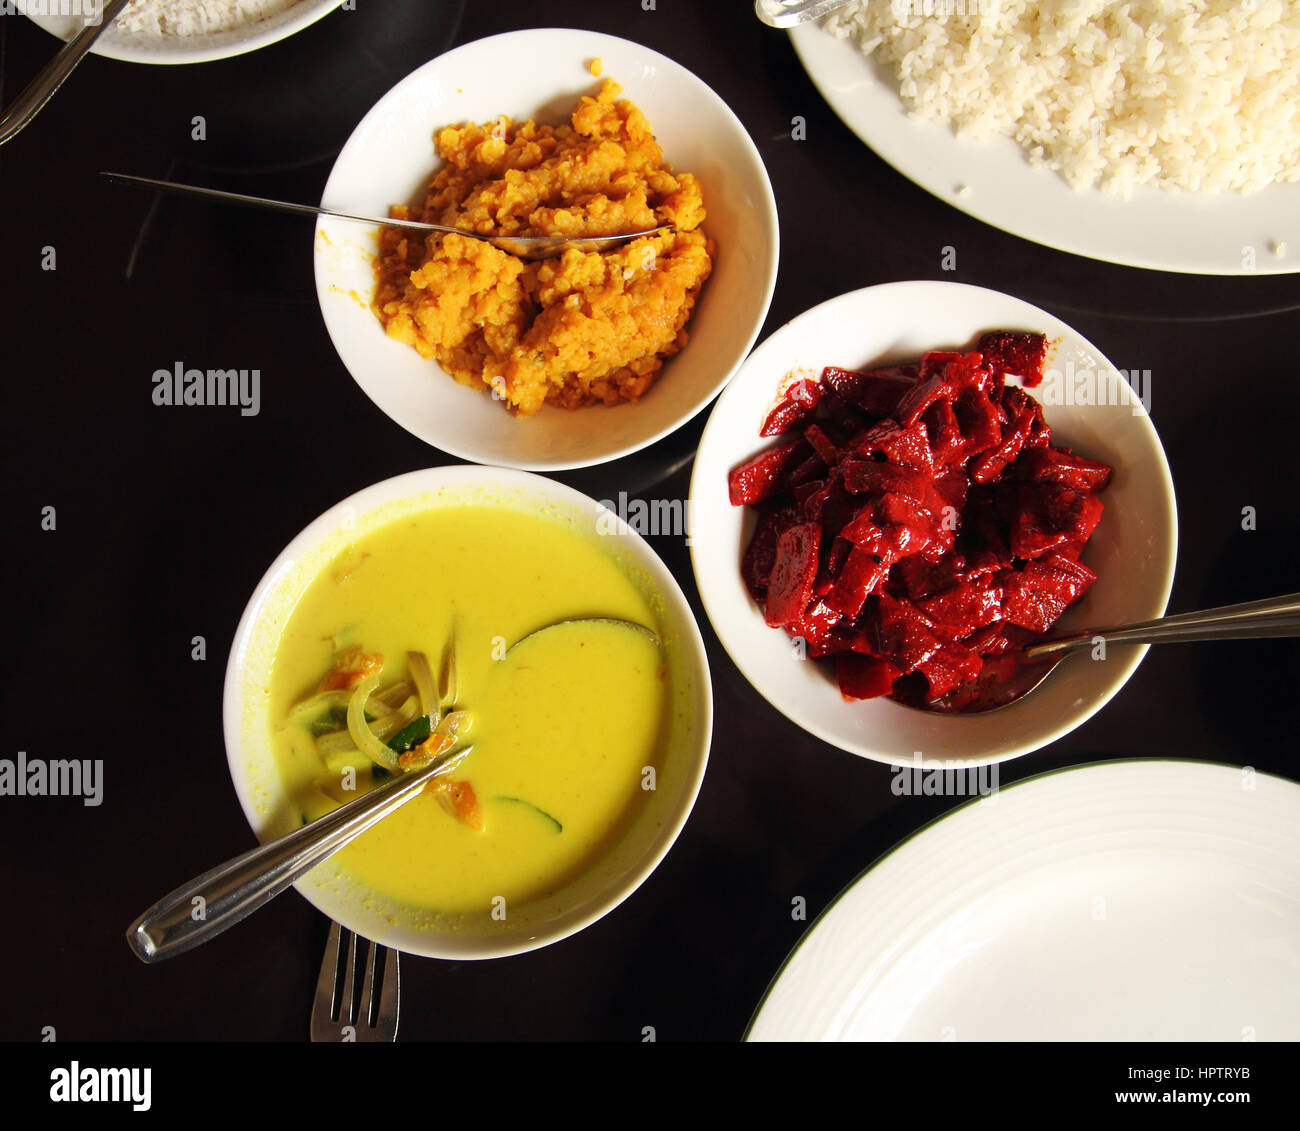 Cuisine indienne dans des bols sur la table Banque D'Images